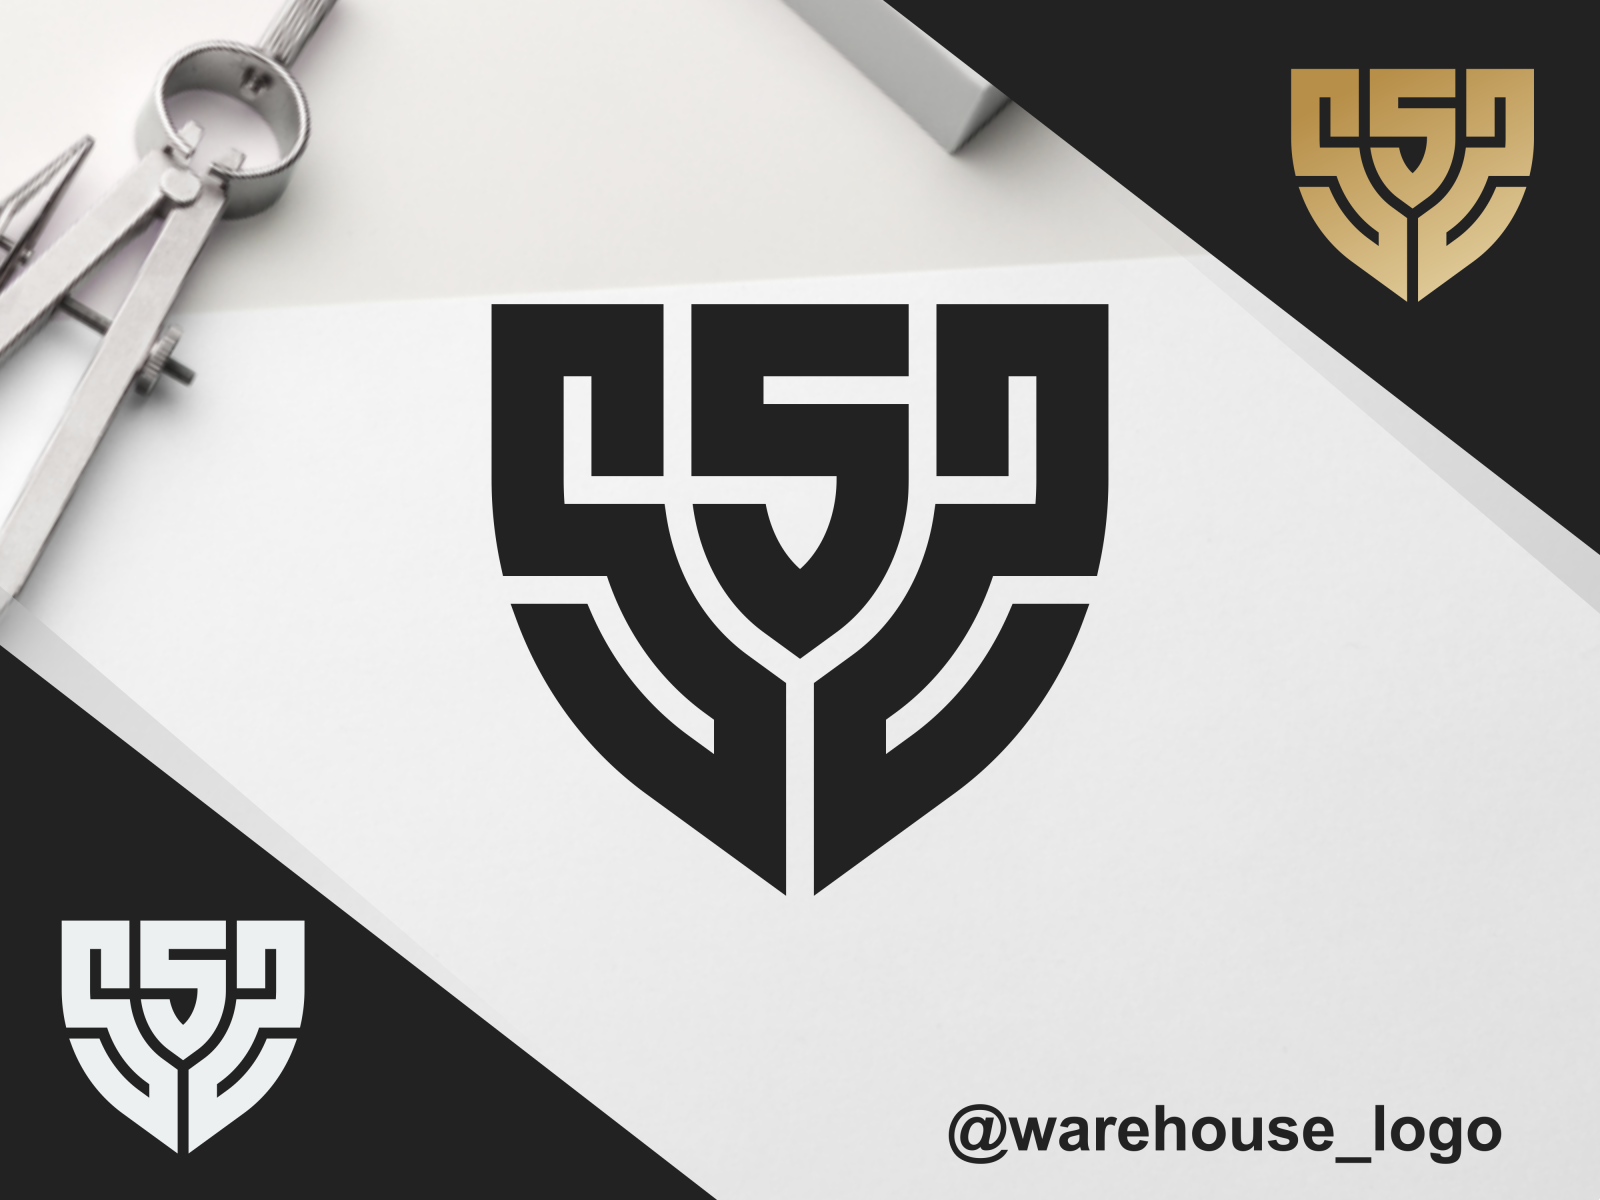 sss logo idea by warehouse_logo on Dribbble